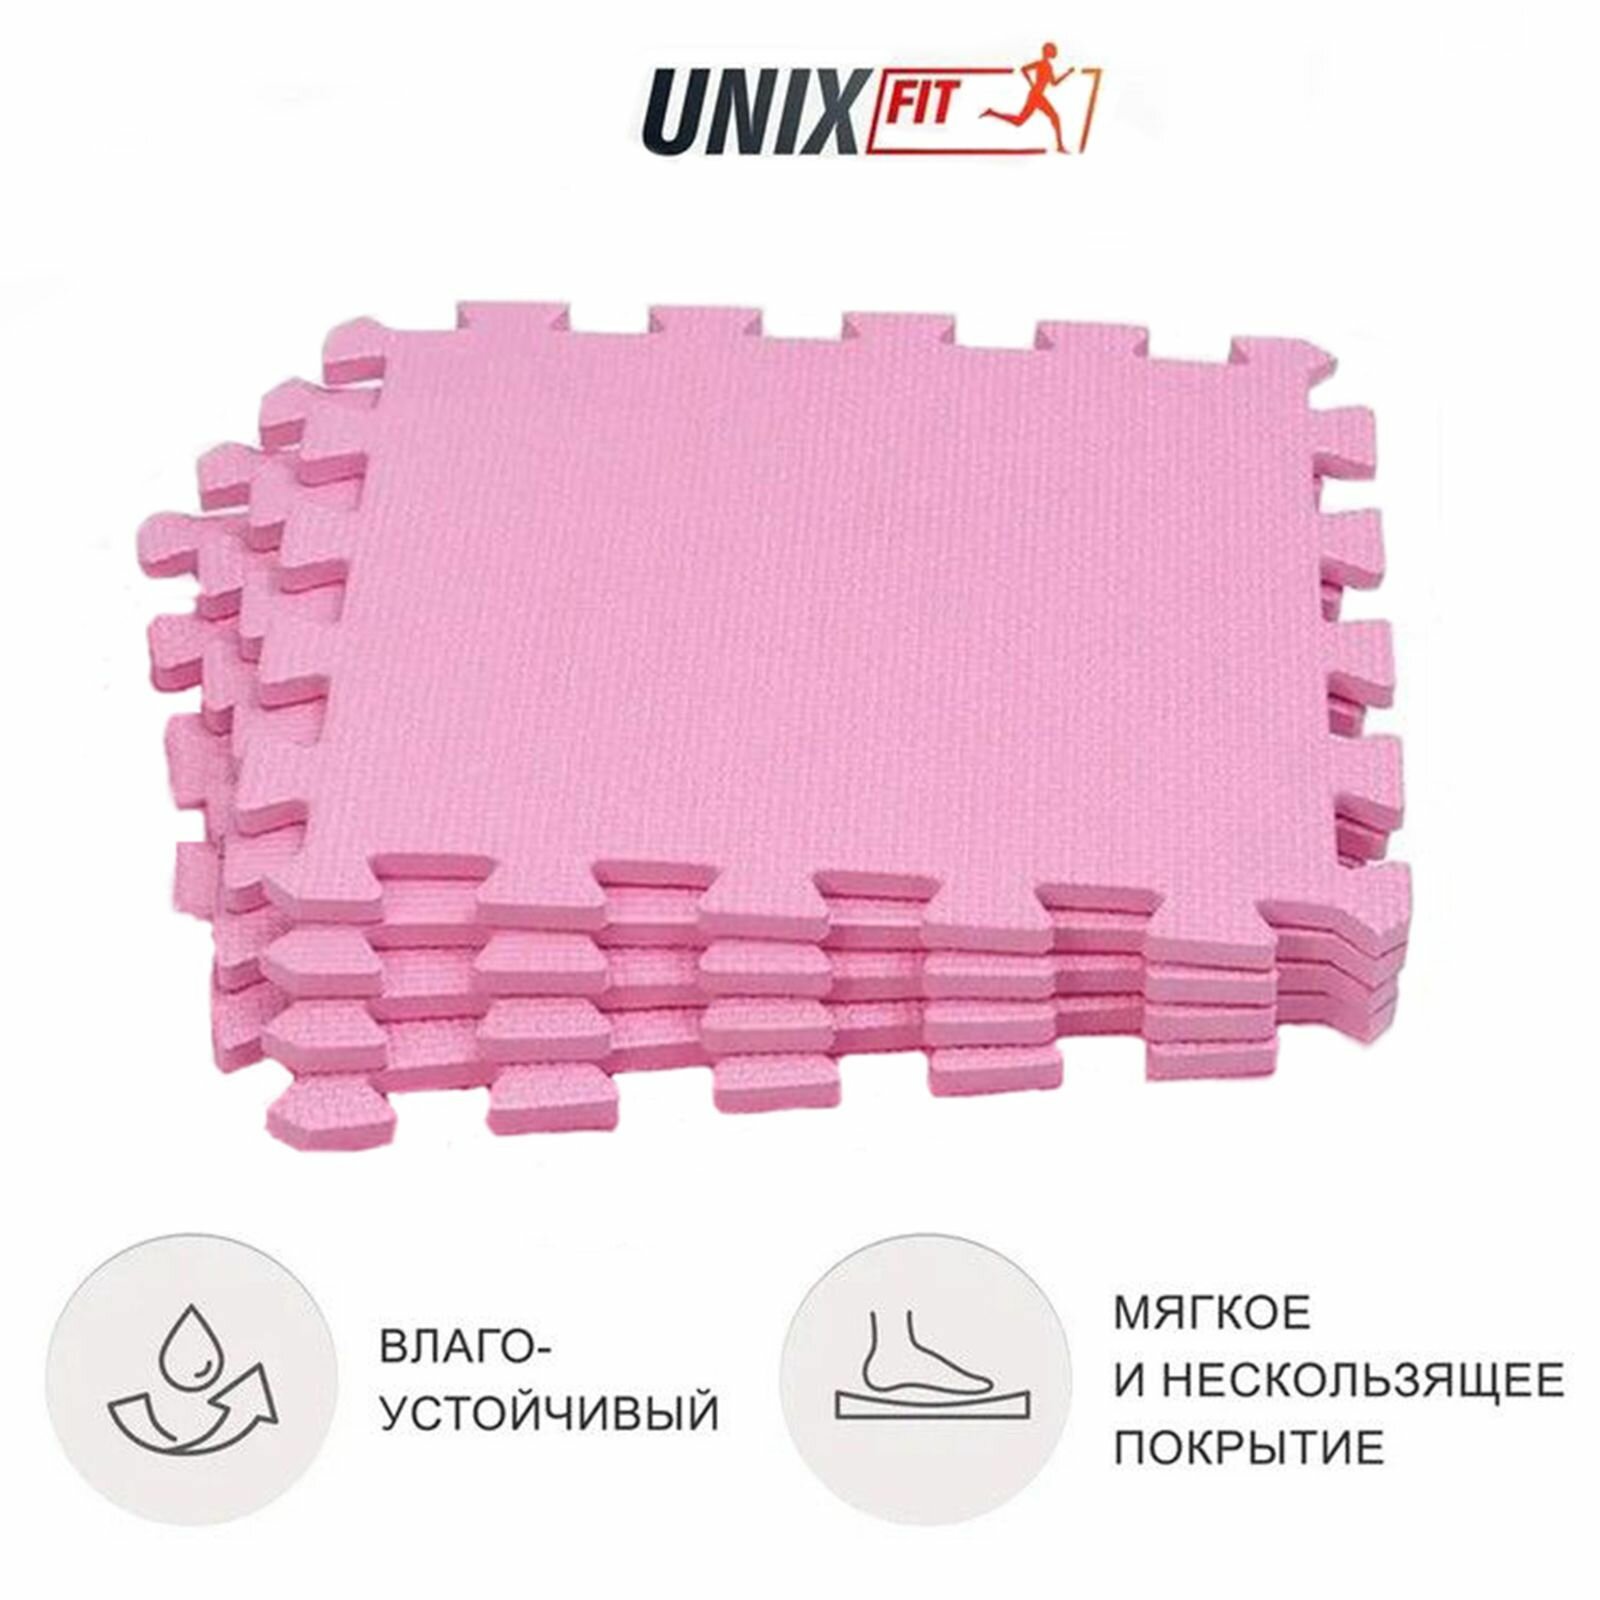 Коврик-пазл UNIX Fit влагостойкий, большие мягкие модули спортивные, детский коврик, 30 х 30 х 1 см, розовый, 4 шт. UNIXFIT